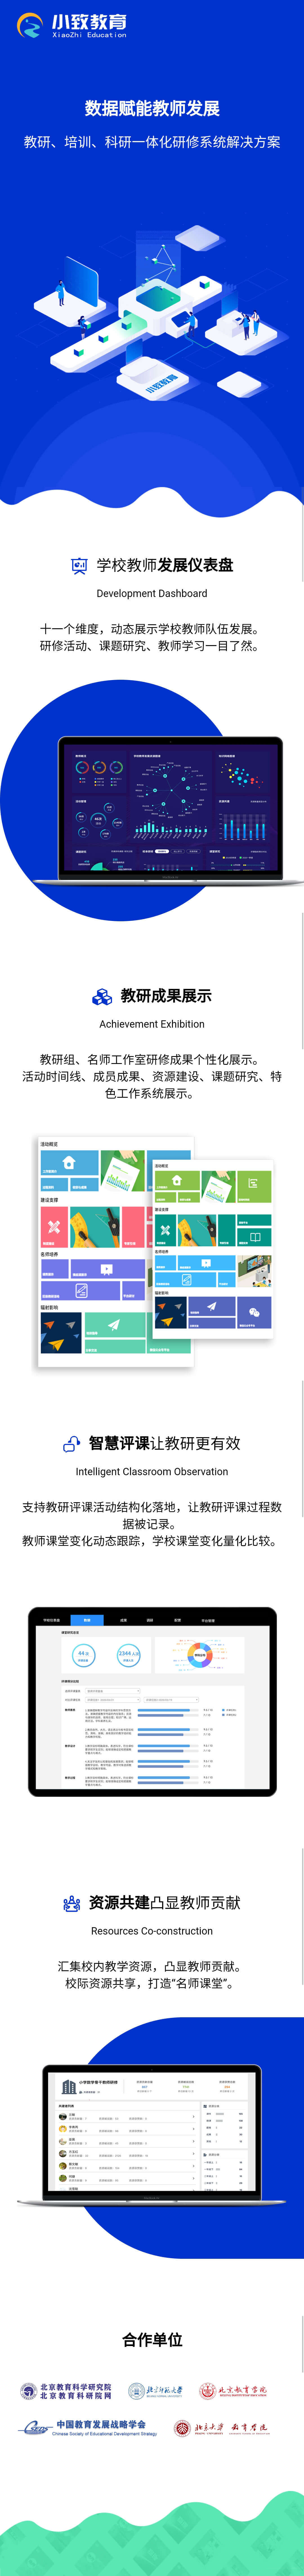 北京小致教育科技有限公司教育類網站設計（數據儀導盤，網站頁面）圖5